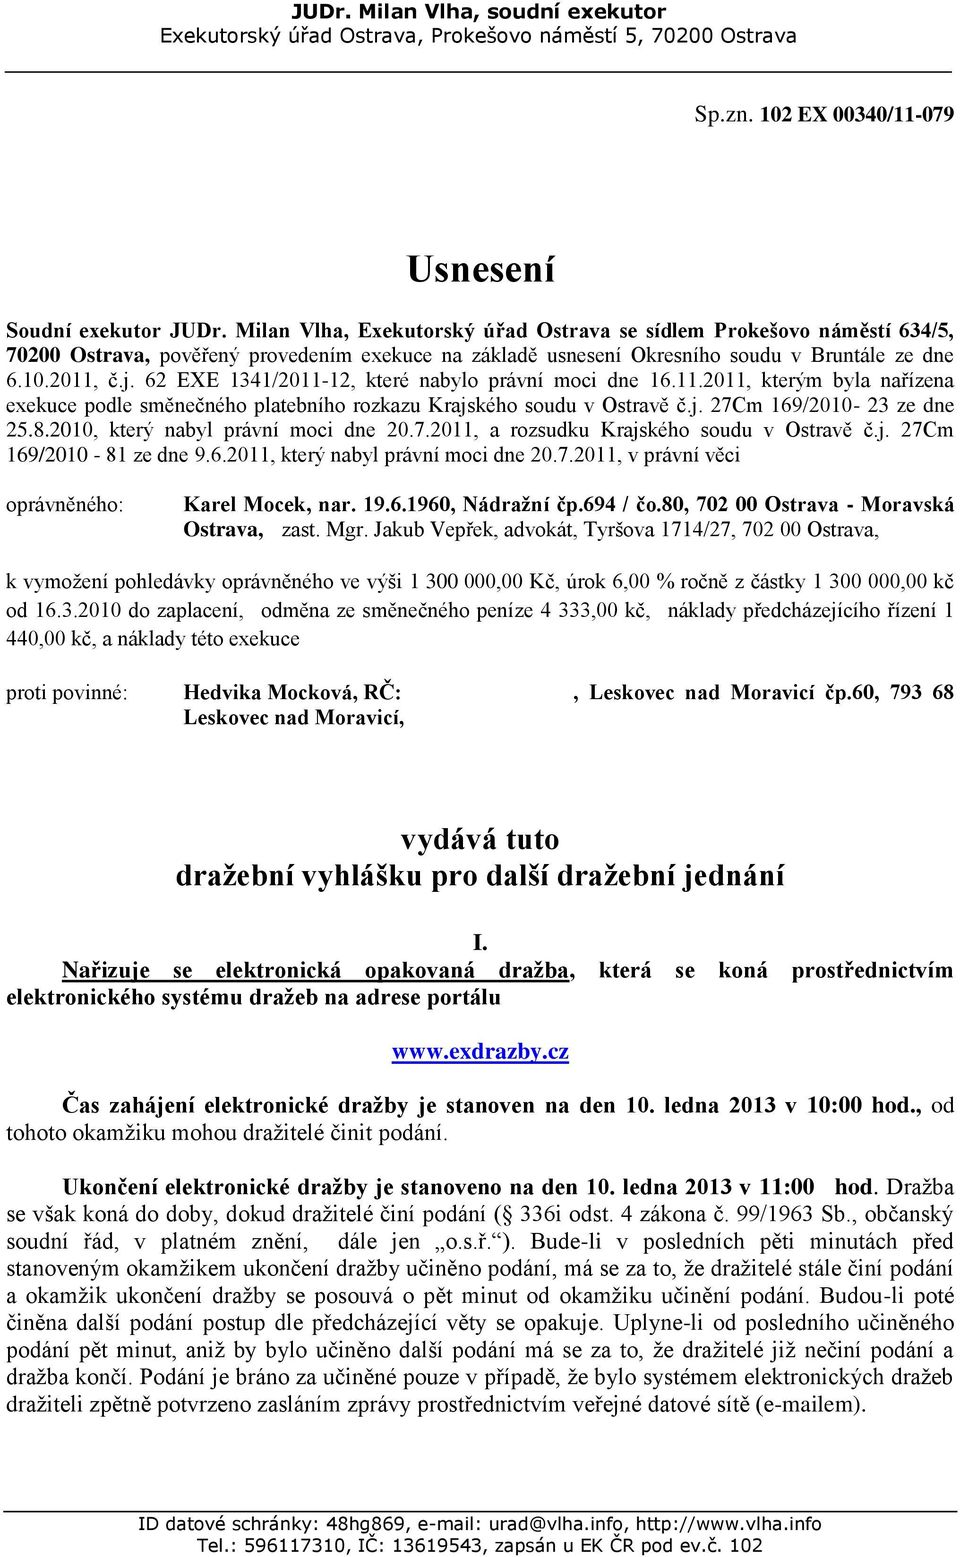 62 EXE 1341/2011-12, které nabylo právní moci dne 16.11.2011, kterým byla nařízena exekuce podle směnečného platebního rozkazu Krajského soudu v Ostravě č.j. 27Cm 169/2010-23 ze dne 25.8.